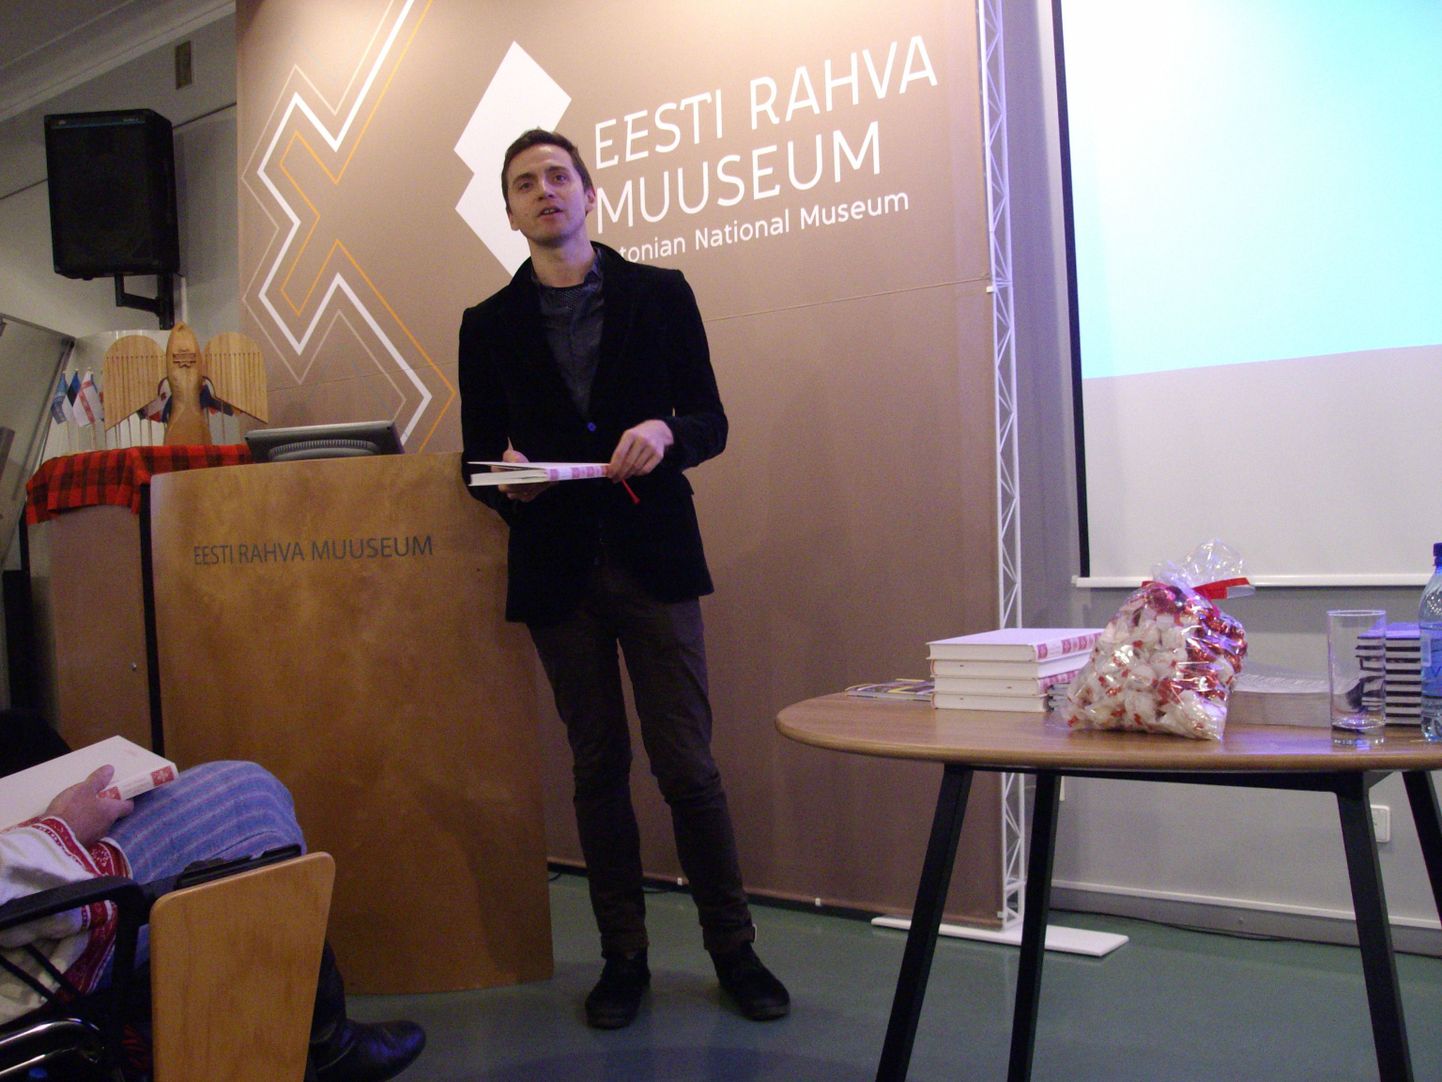 Mullu veebruaris esitles Andreas Kalkun Eesti Rahva Muuseumi näitusemajas «Seto kirävara» sarja kümnenda raamatuna ilmunud kogumikku «Ilosa’ ja pogana’ jutu’».